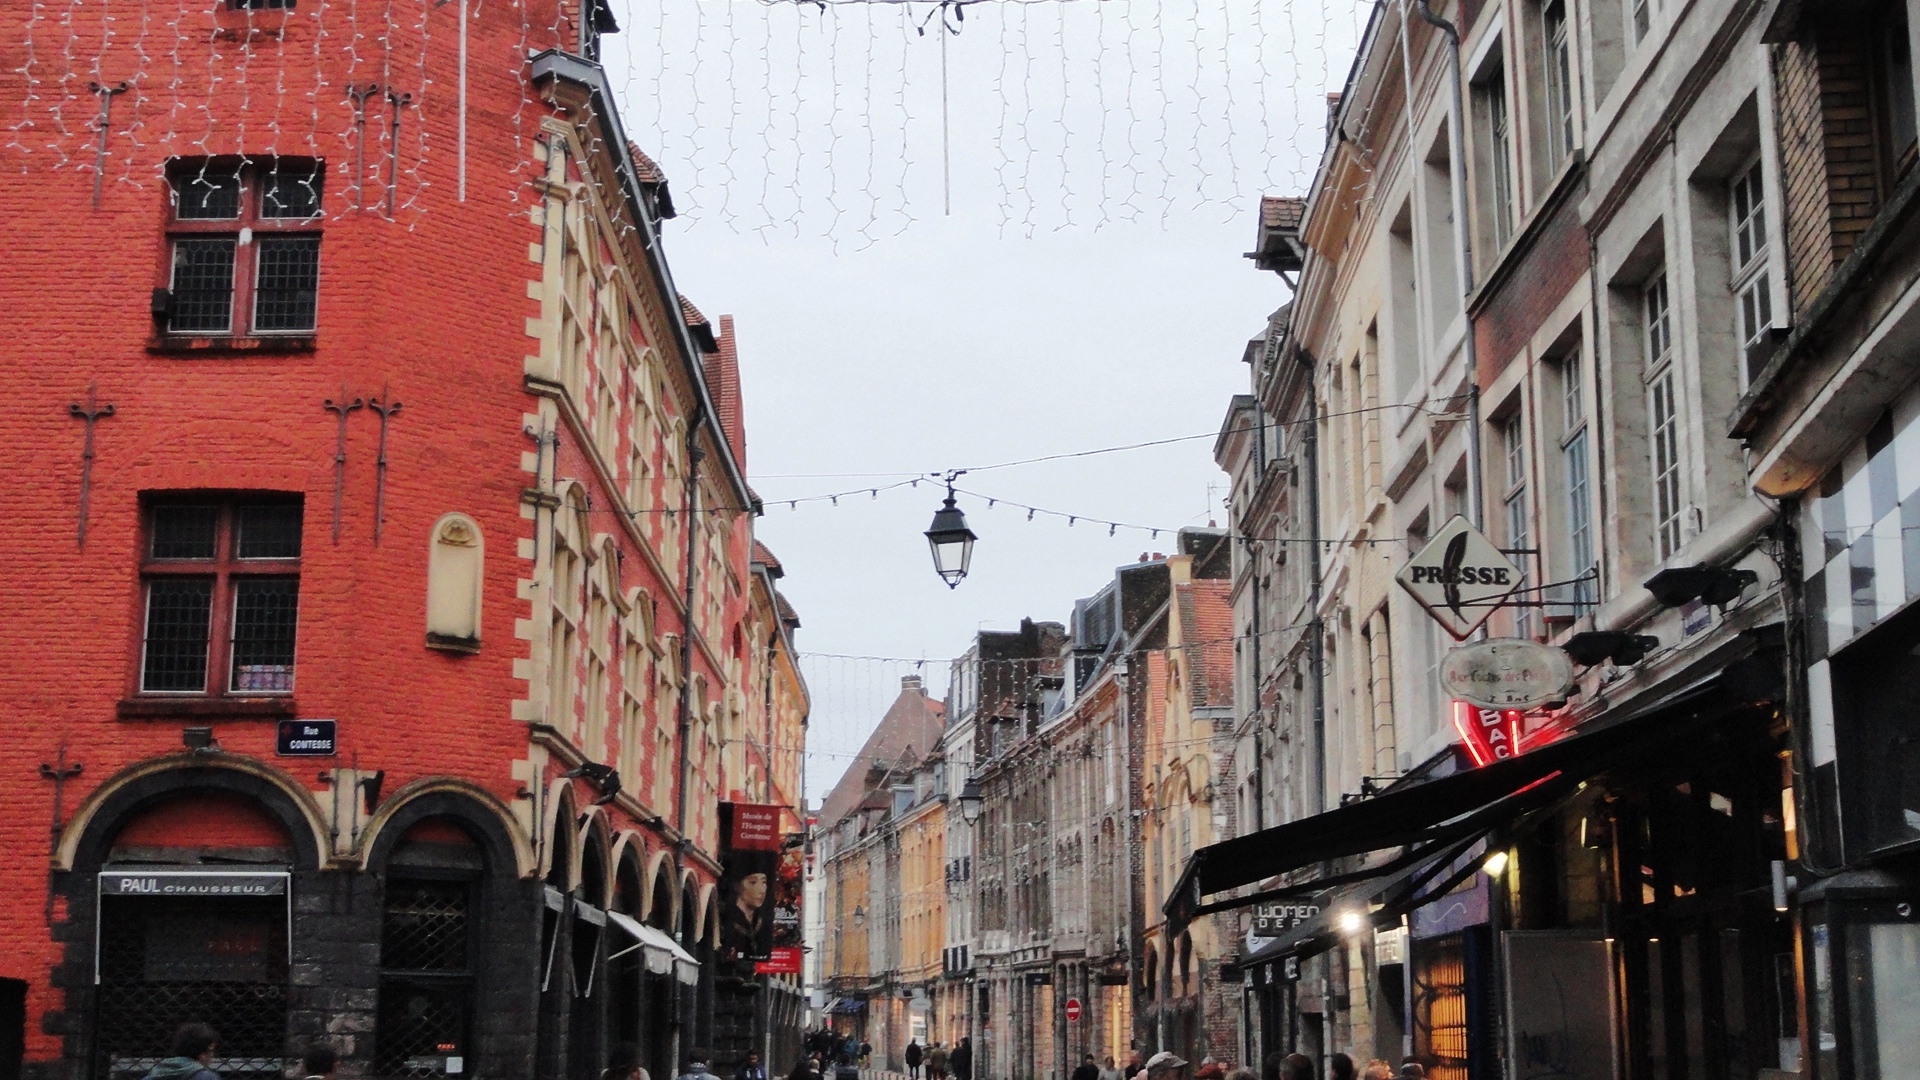 Vieux Lille - Rue de la Monnaie